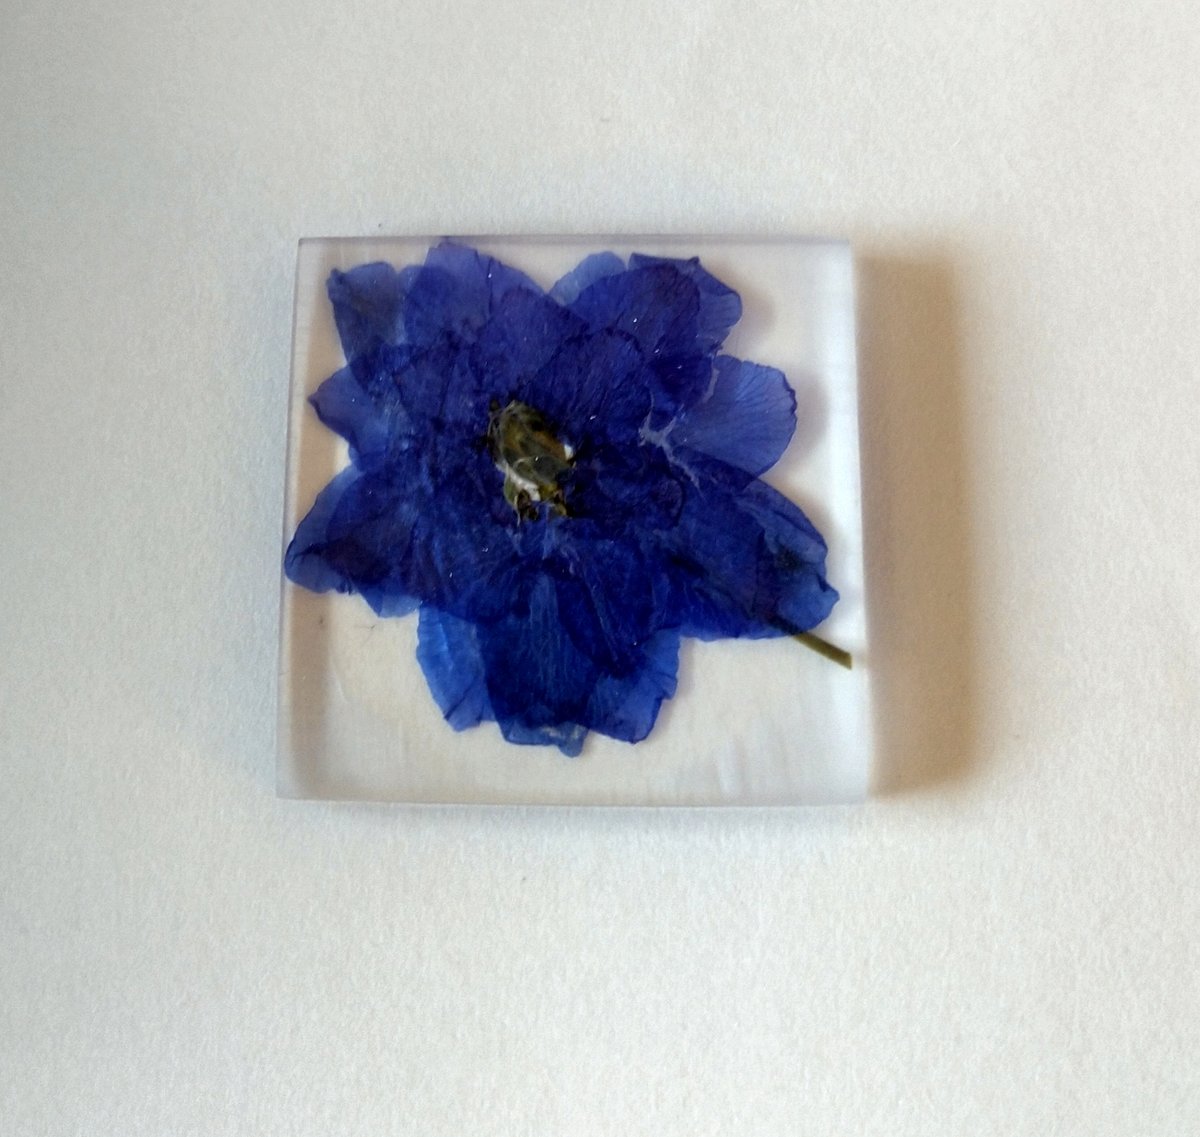 Yuji Kadomatsu デルフィニウム の レジン 封入 鮮やかな青で八重のデルフィニウムを 押し花にしていたことを思い出して作った ものすごく薄くできたけど 元の形が分かりにくいなぁ 当時はシリカゲル持ってなかったから 仕方がないけど あれ以来 お花屋